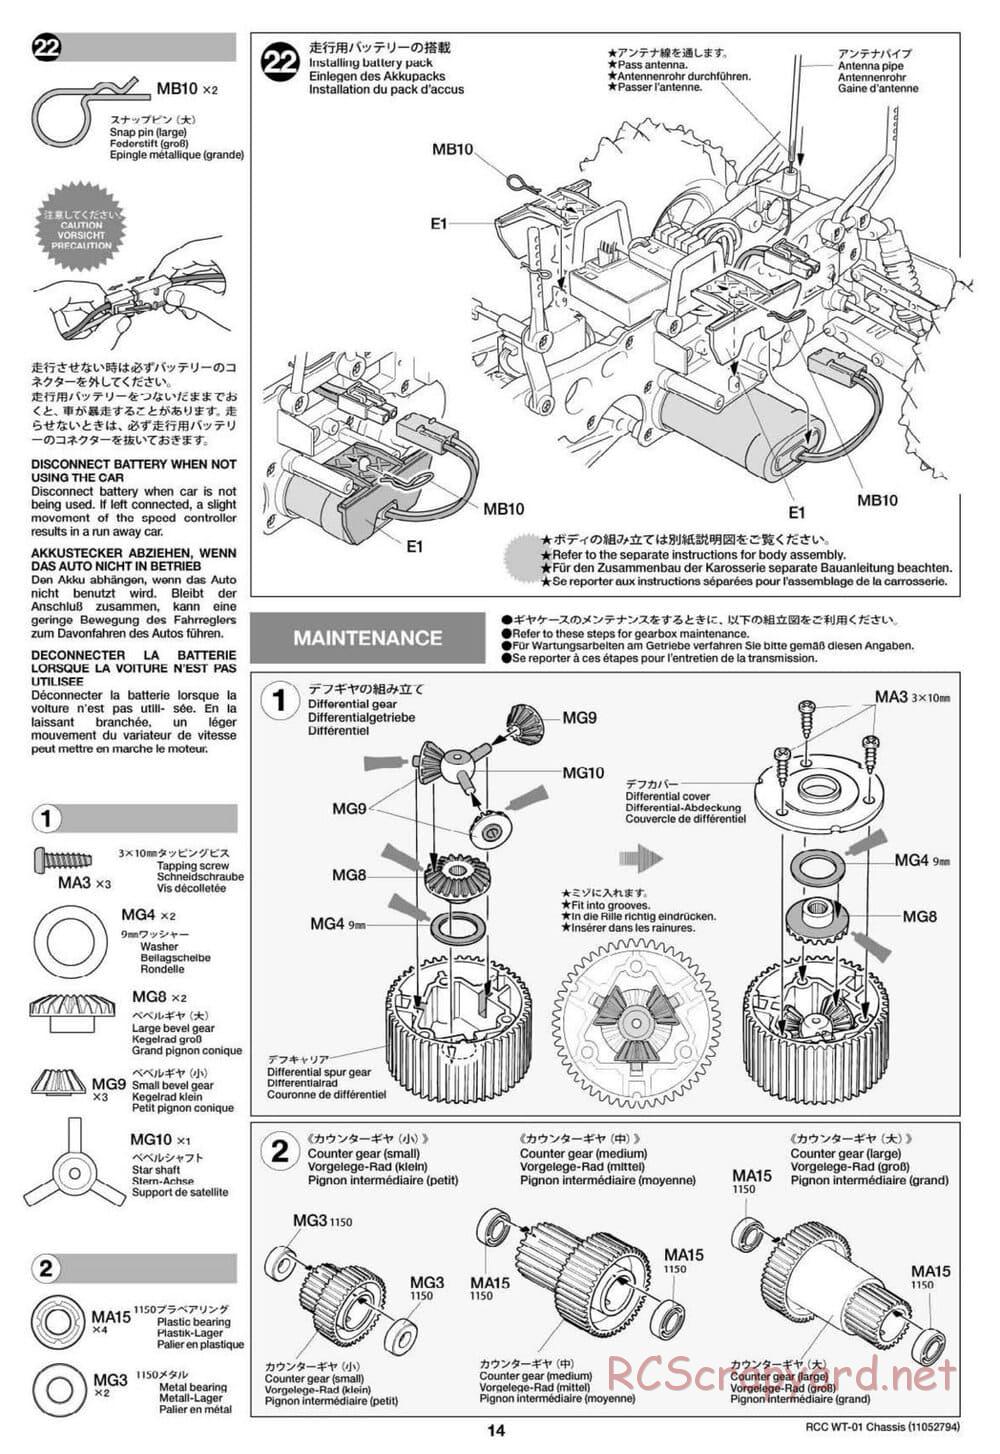 Tamiya - WT-01 Chassis - Manual - Page 14